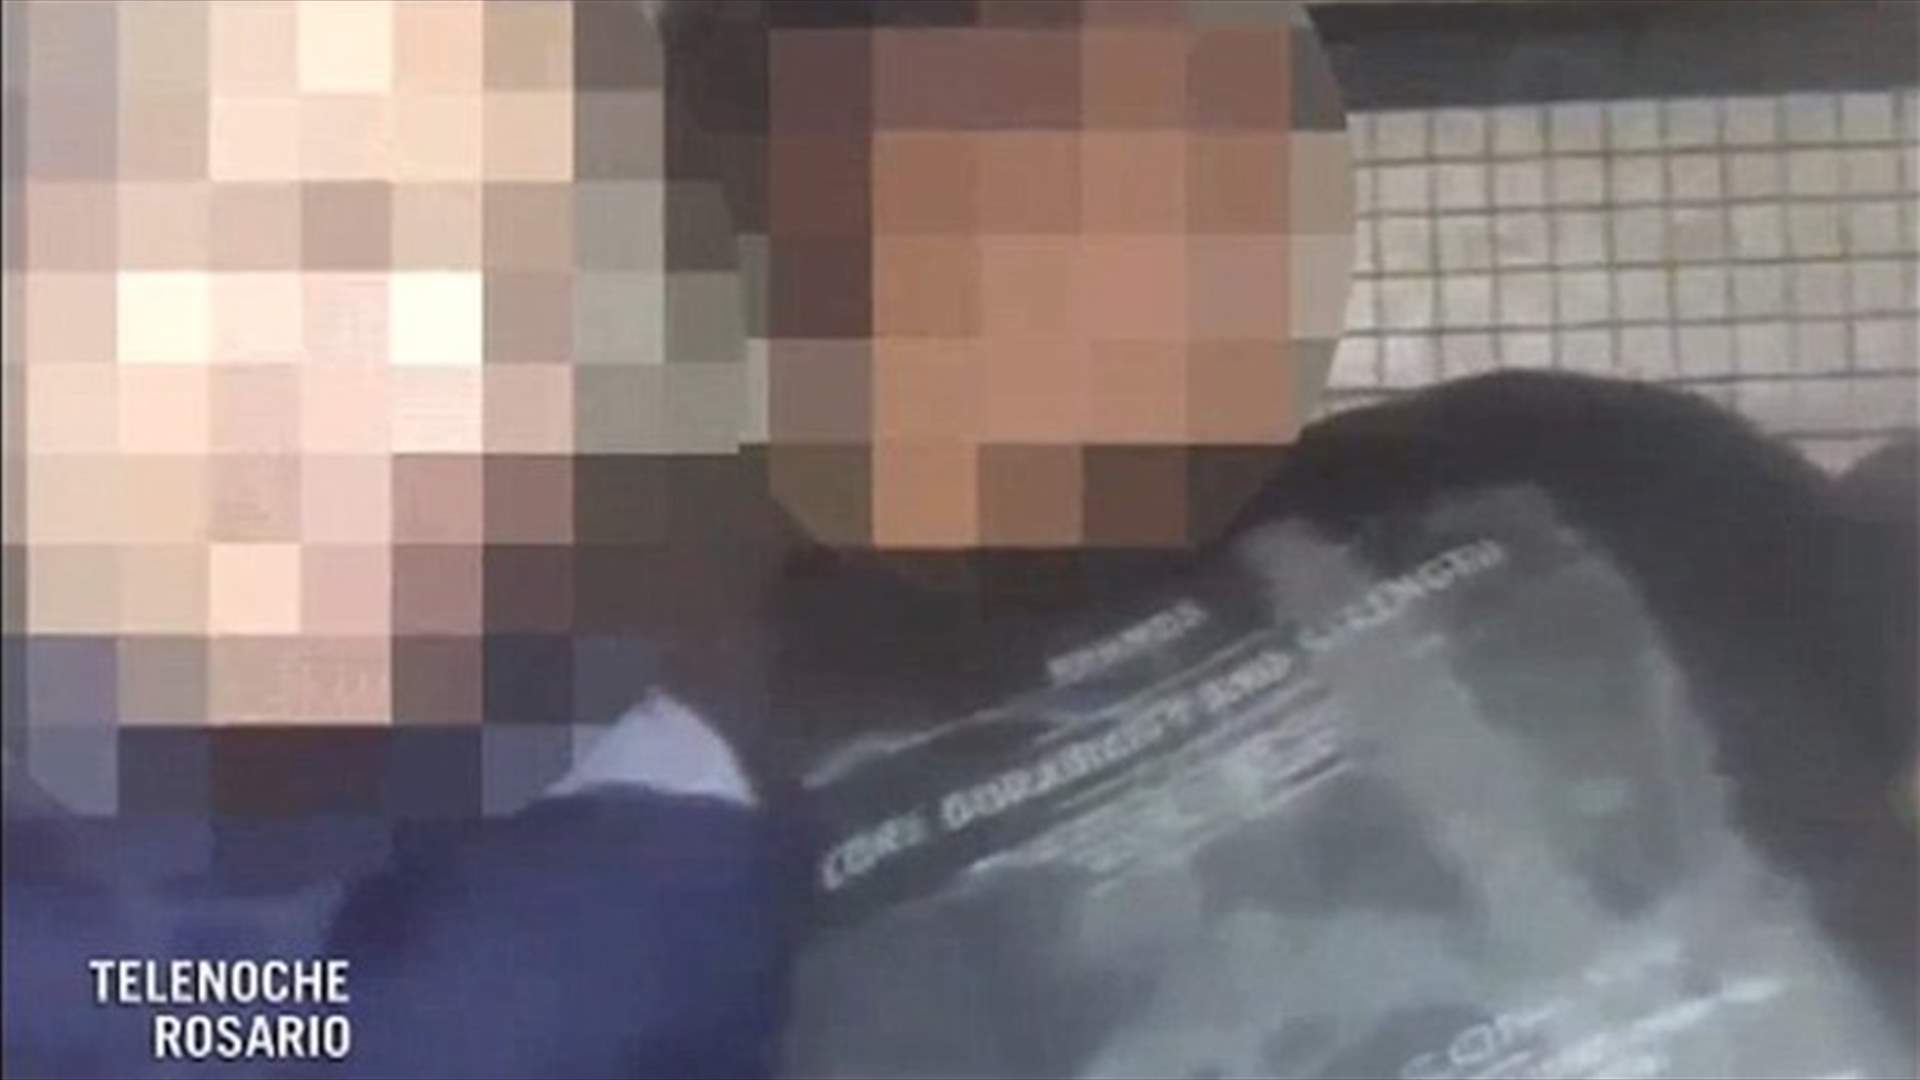 بالفيديو: ضابطان يمارسان الجنس داخل سيارة الشرطة... لن تصدقوا من صورهما!